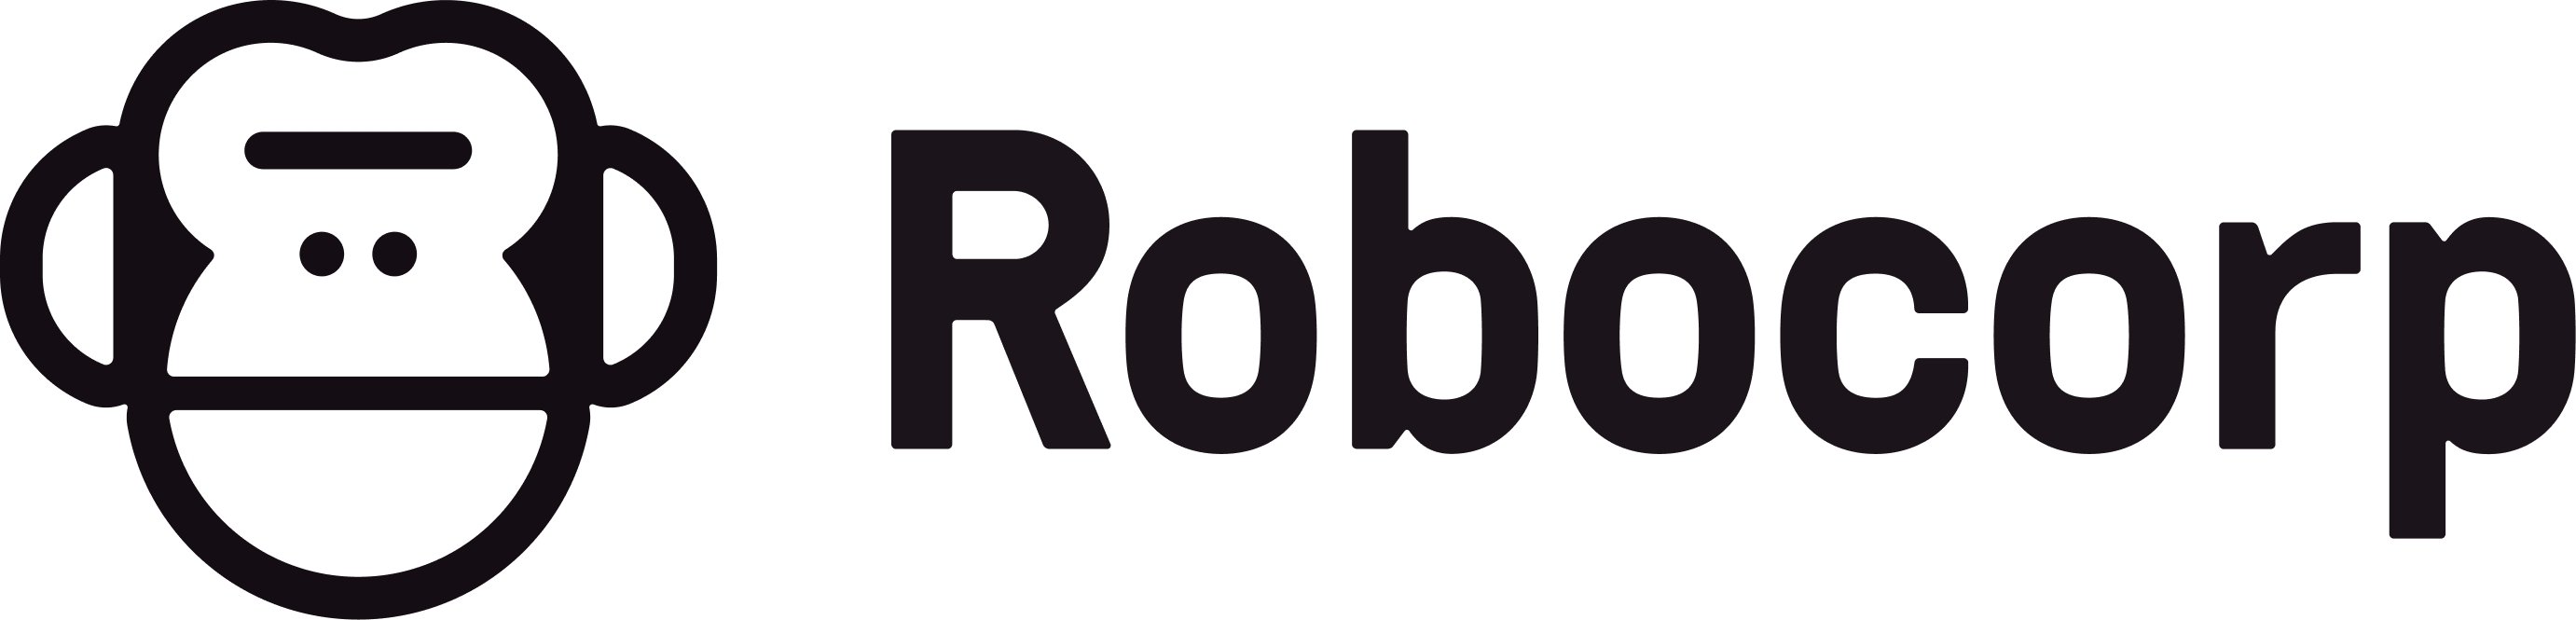 Dark logo transparent large robocorp